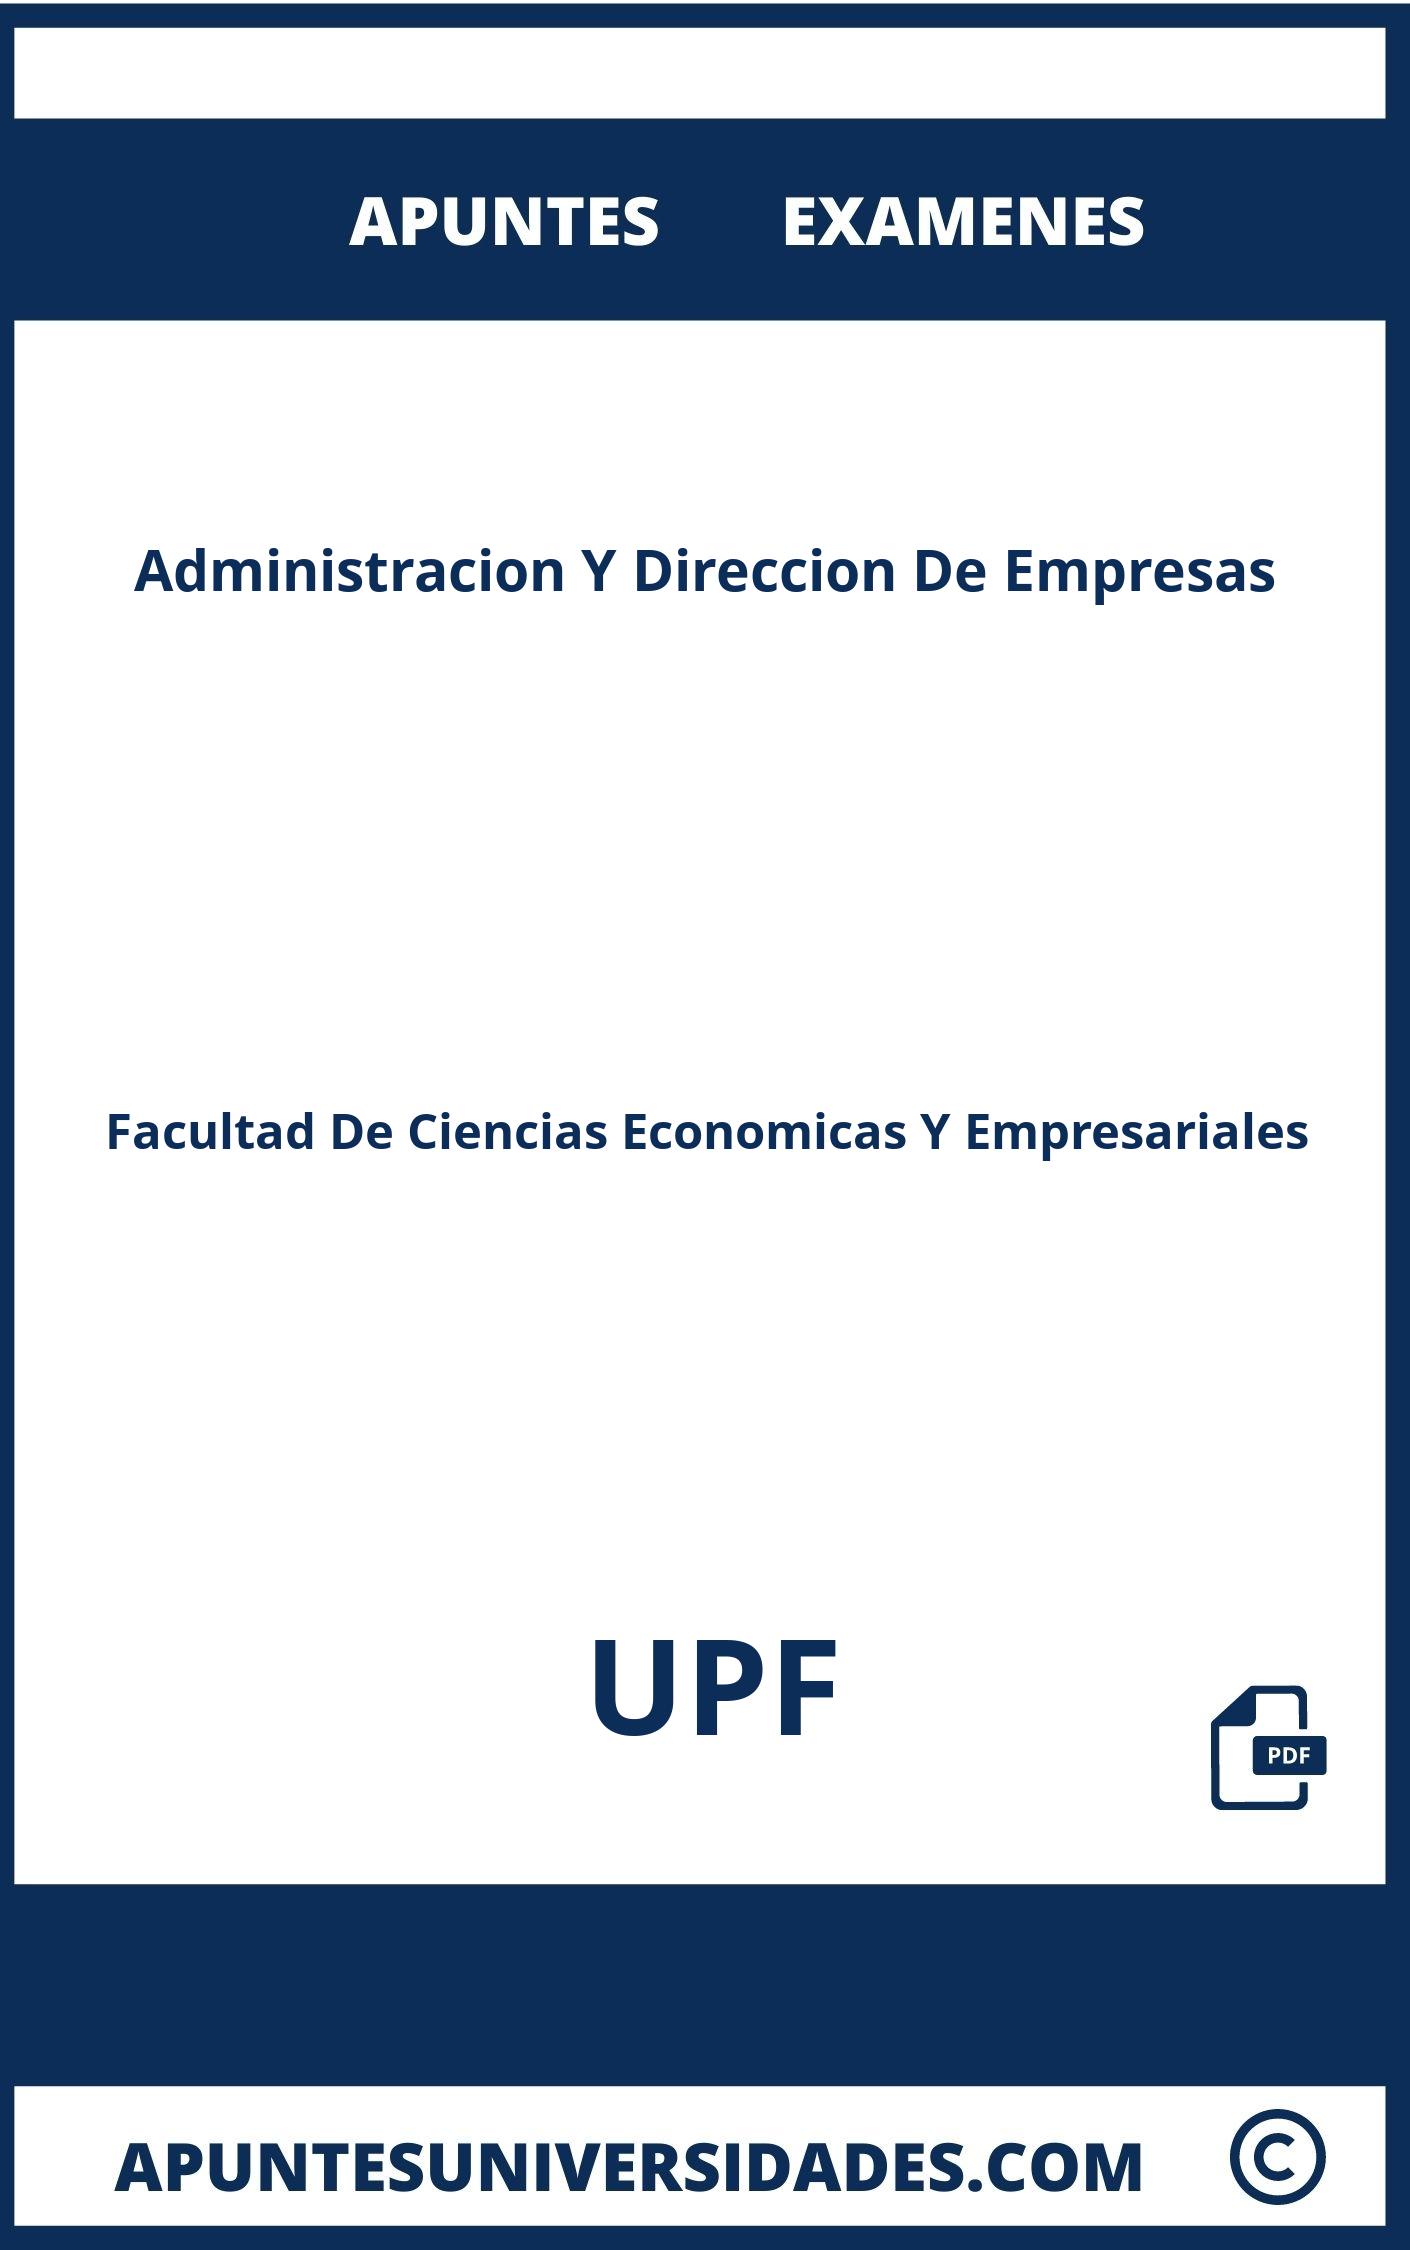 Examenes Apuntes Administracion Y Direccion De Empresas UPF